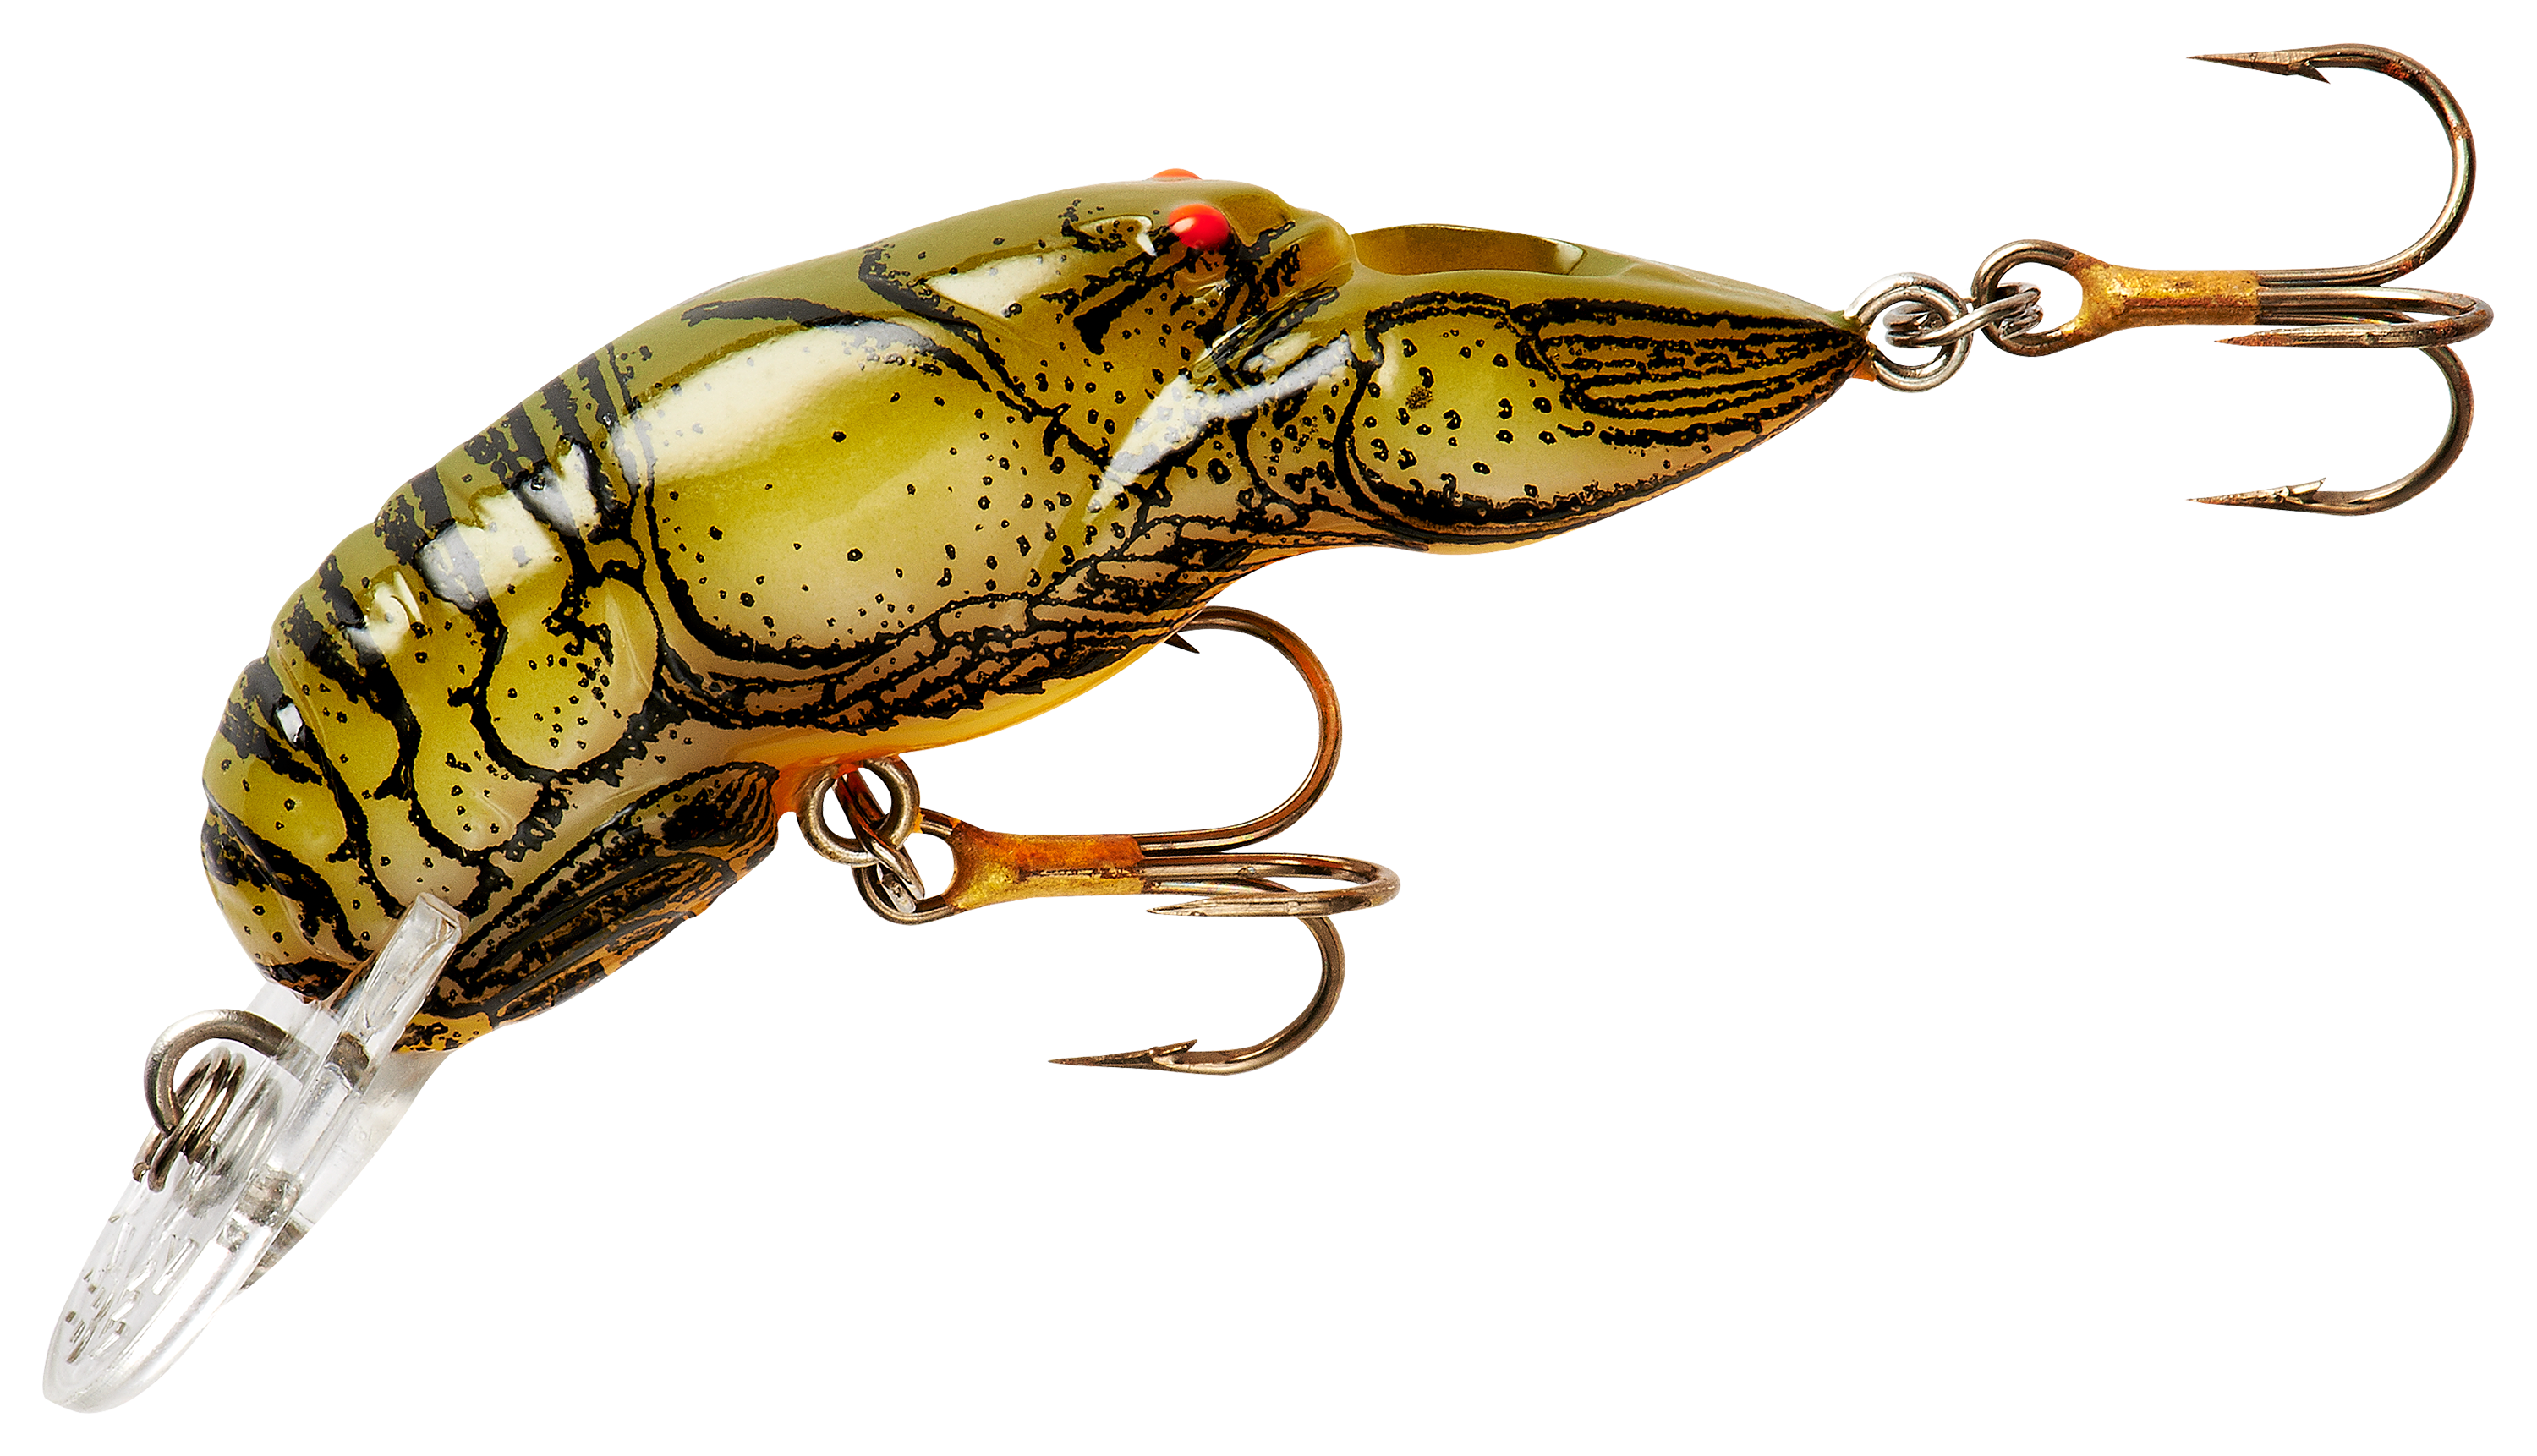 Rebel Crawfish - 1-5/8' - 3-16 oz. - Stream Crawfish